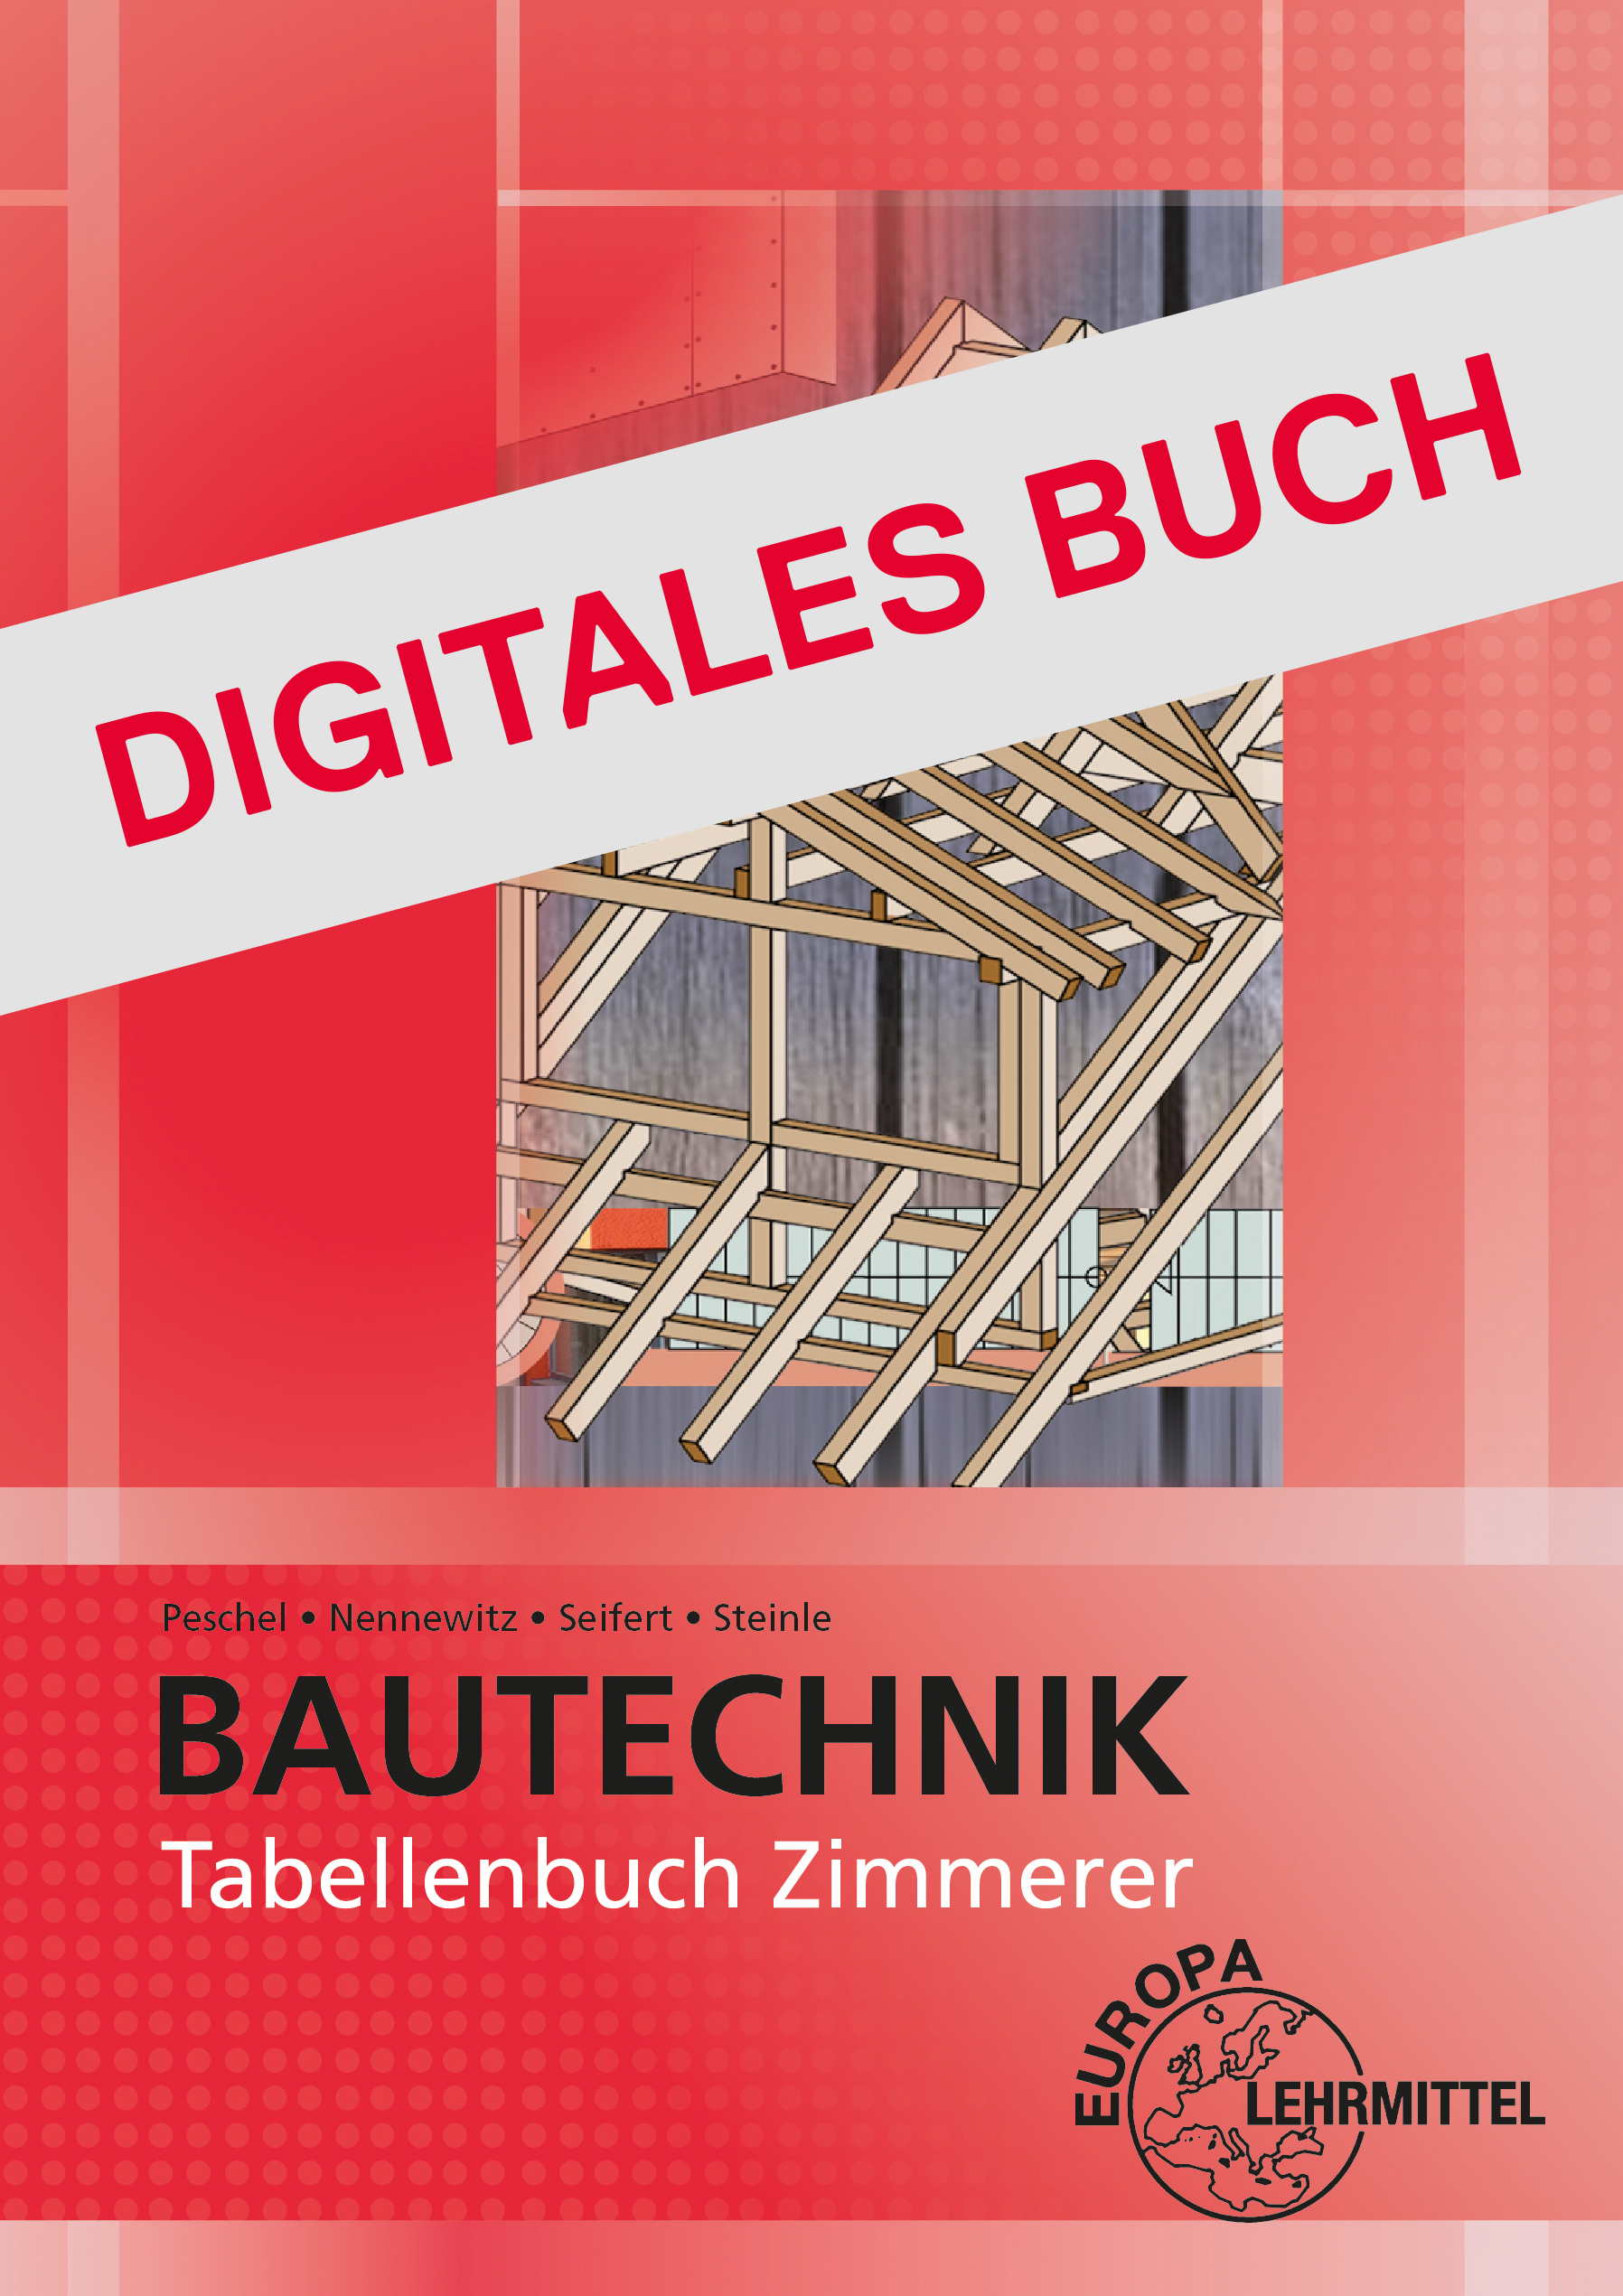 Tabellenbuch Zimmerer - Digitales Buch